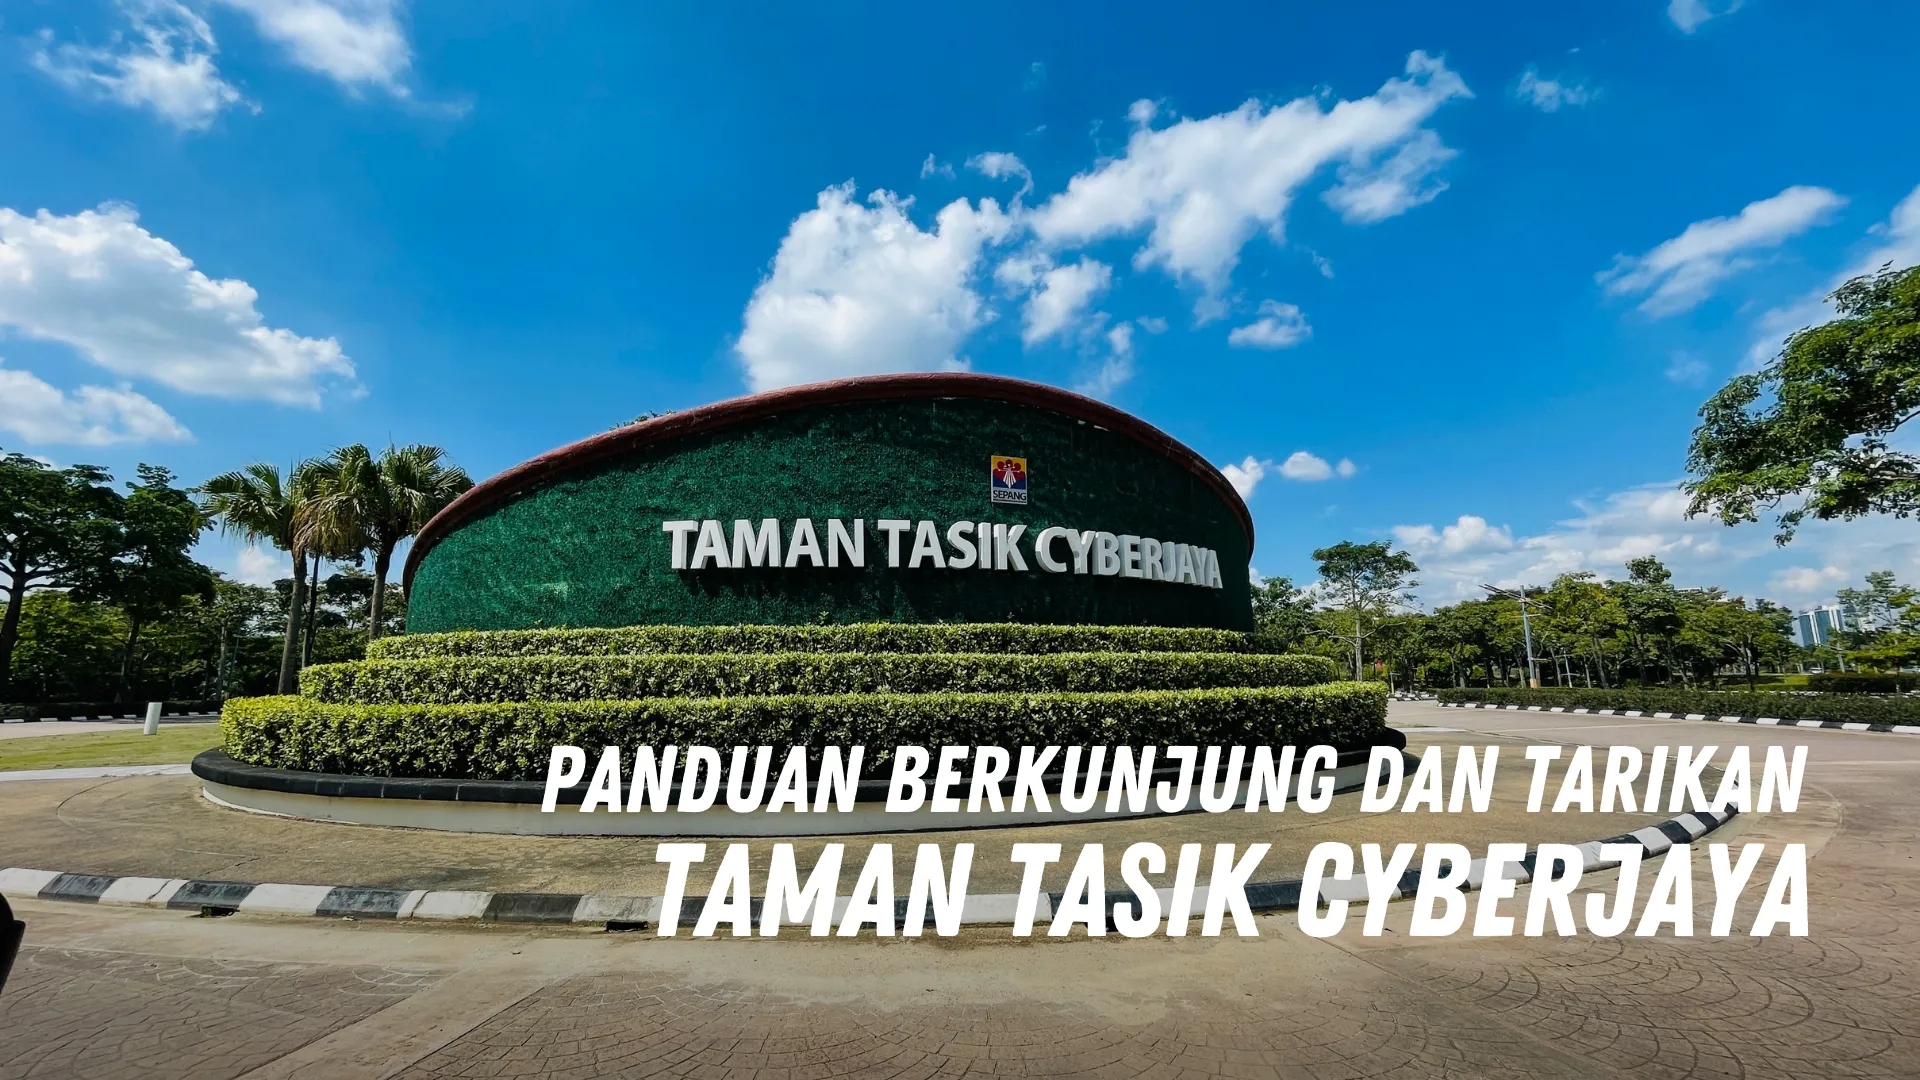 Review Taman Tasik Cyberjaya Malaysia